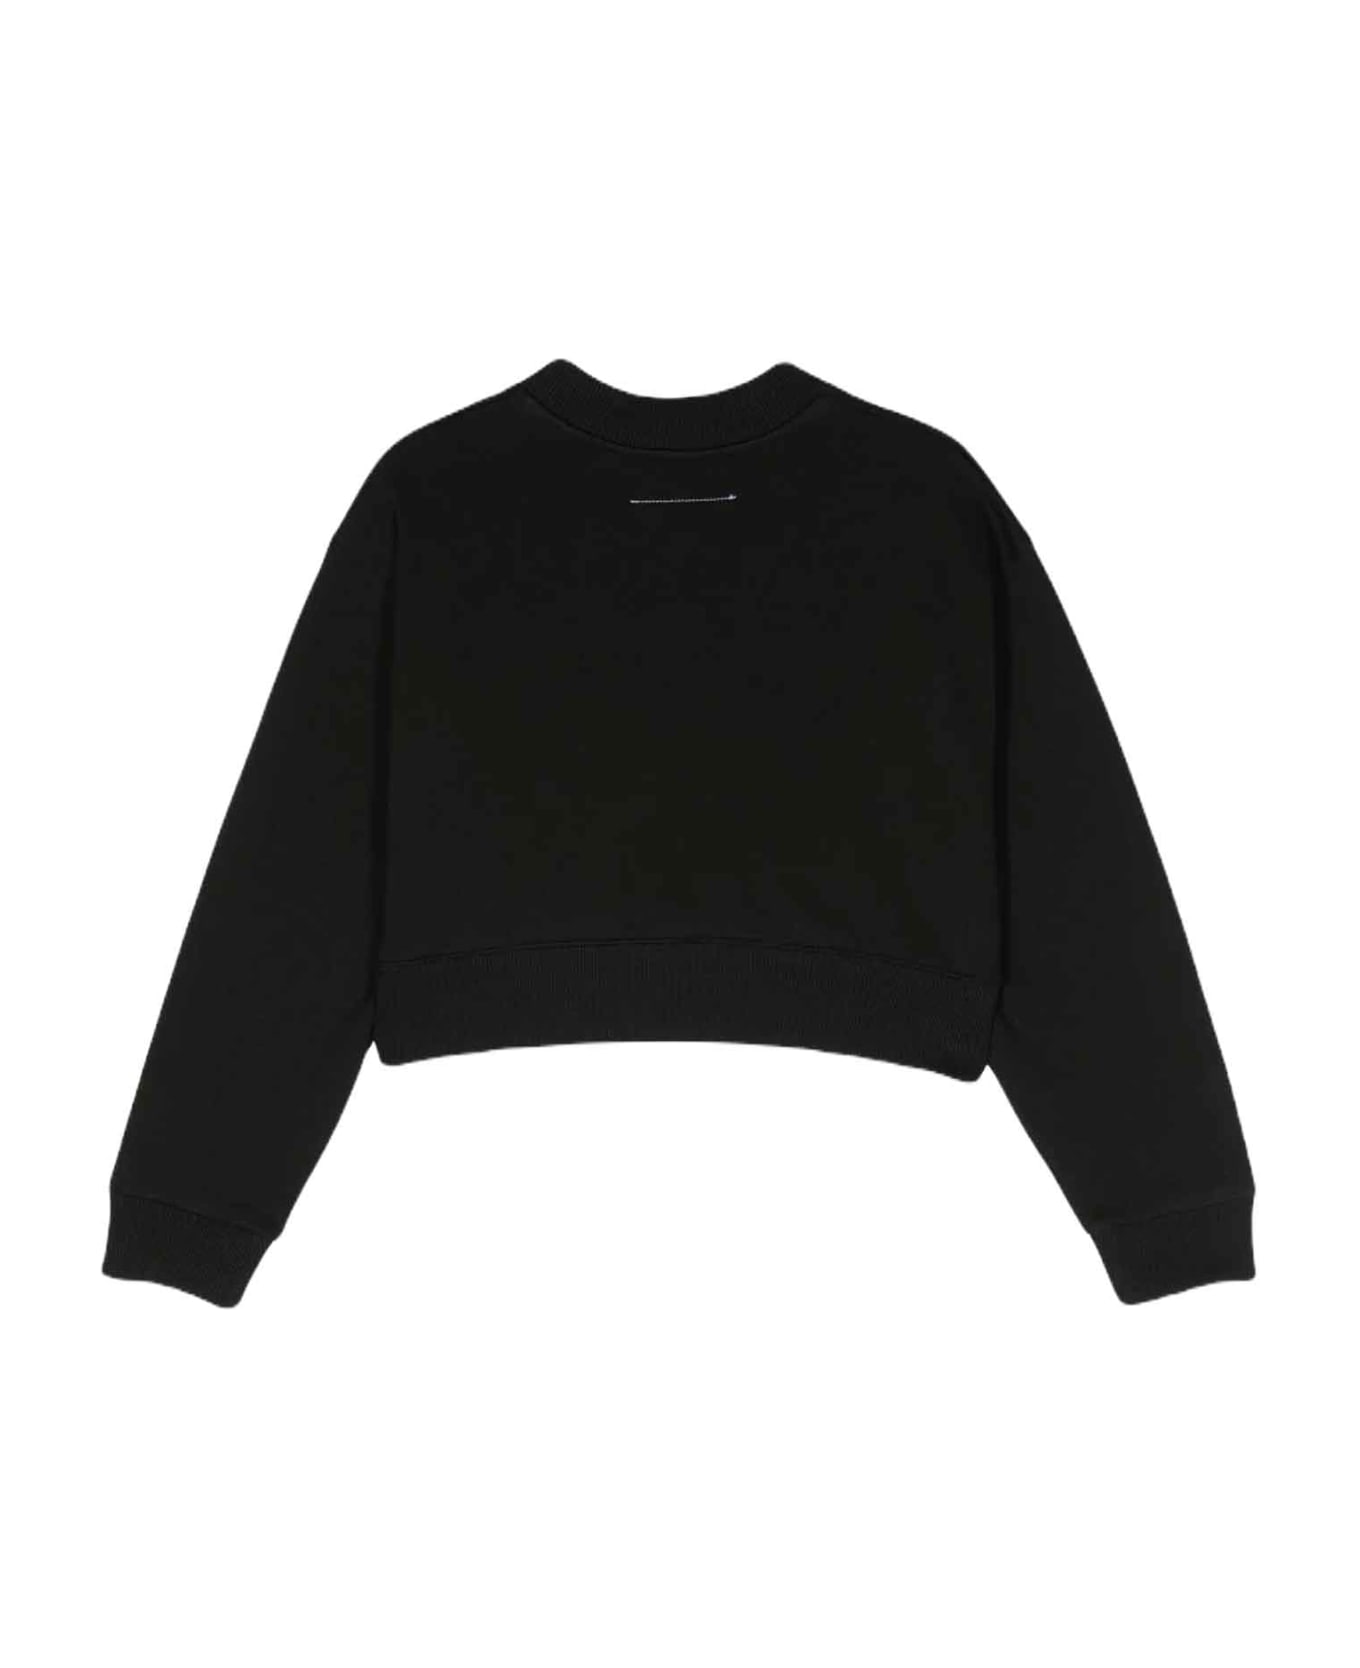 MM6 Maison Margiela Black Sweatshirt Unisex - Nero